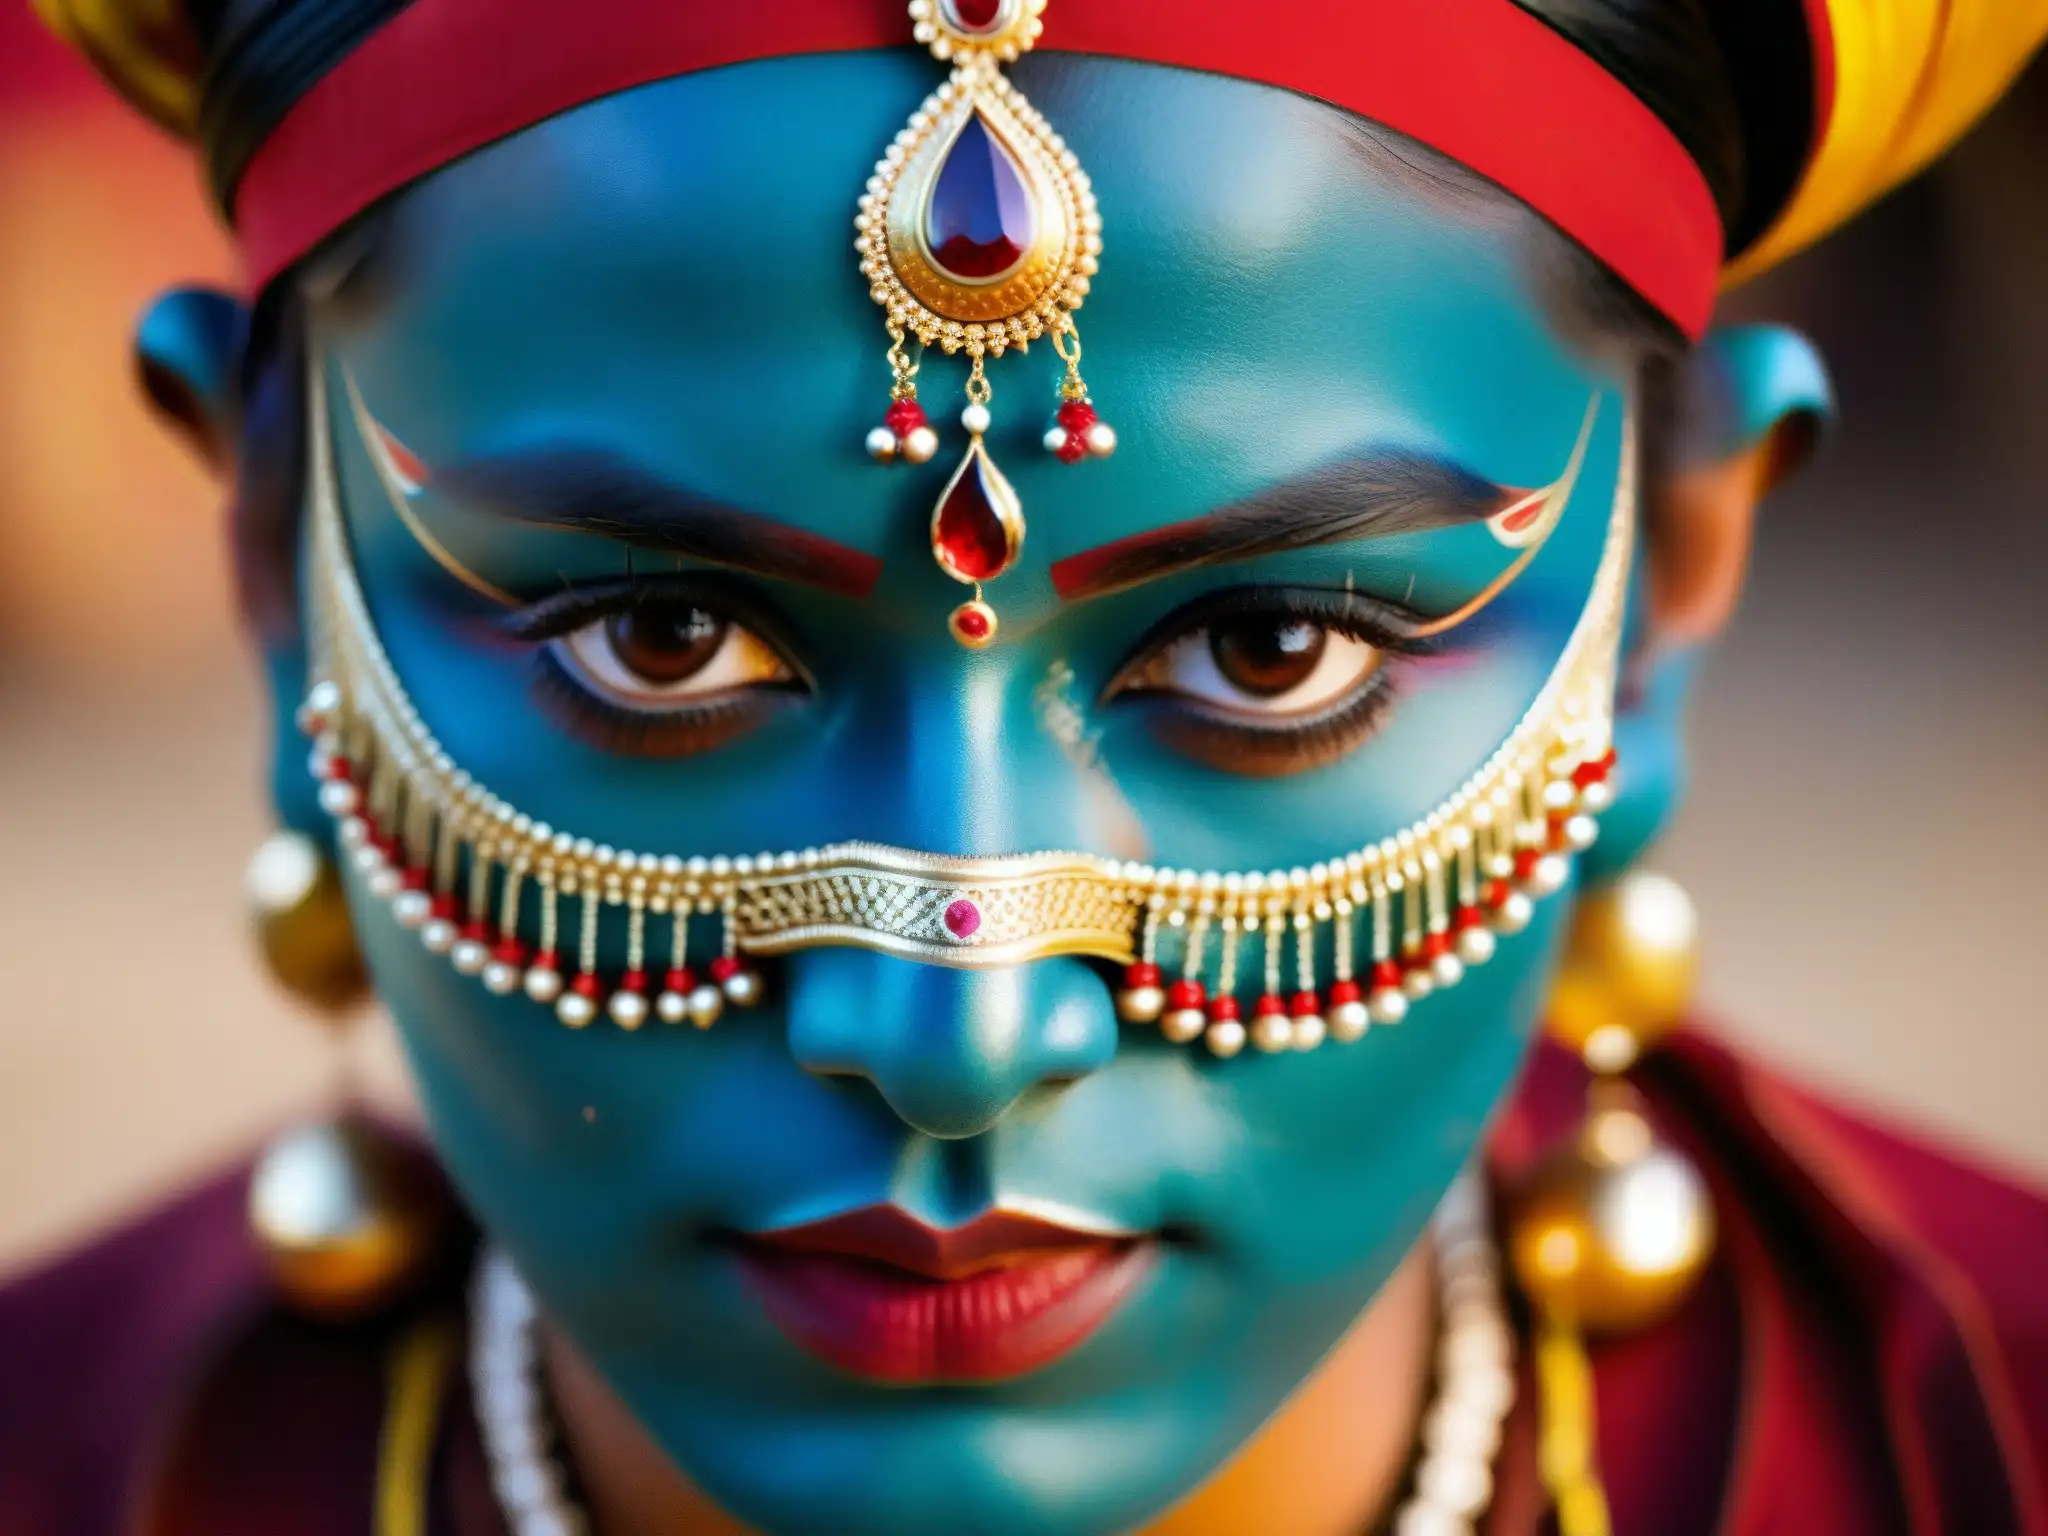 La imagen muestra un intenso artista de teatro de Calcuta con maquillaje y traje tradicionales, listo para un espectáculo sobrenatural